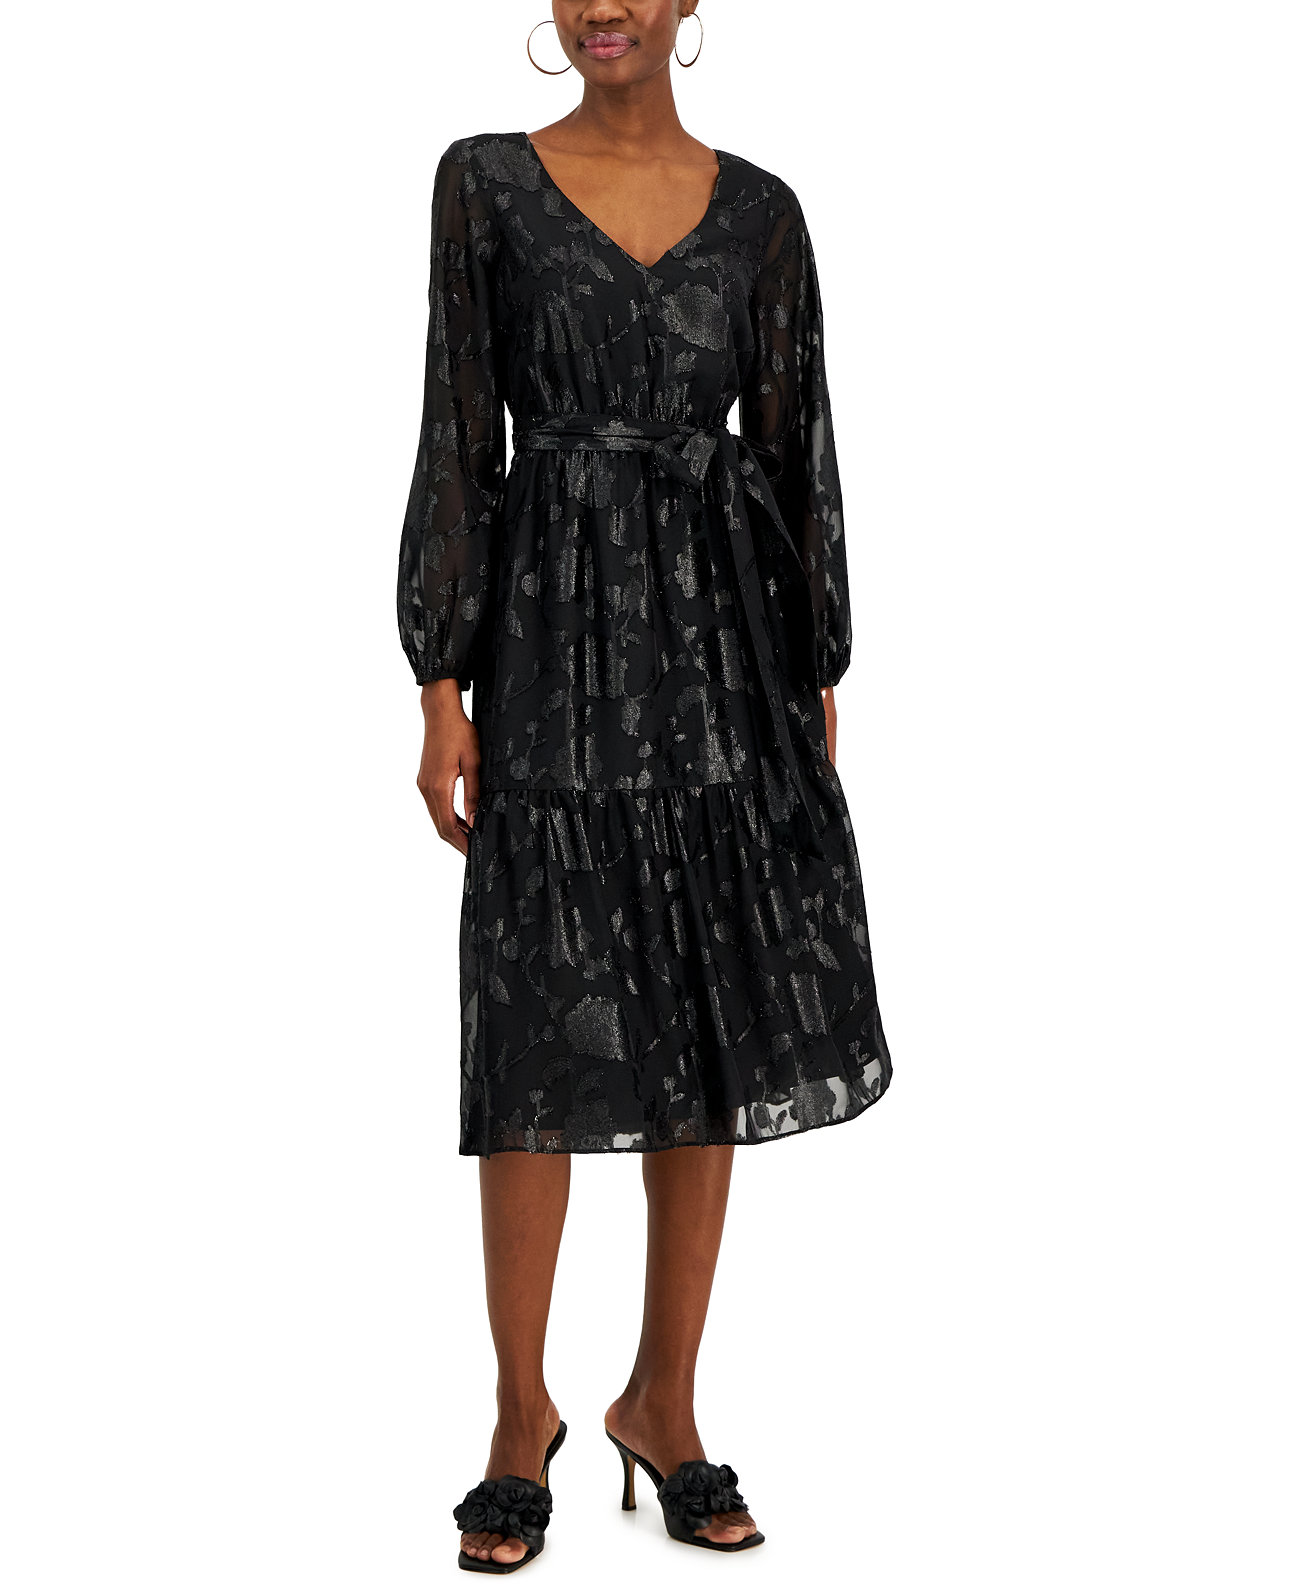 Женское жаккардовое платье с объемными рукавами и принтом, созданное для Macy's I.N.C. International Concepts